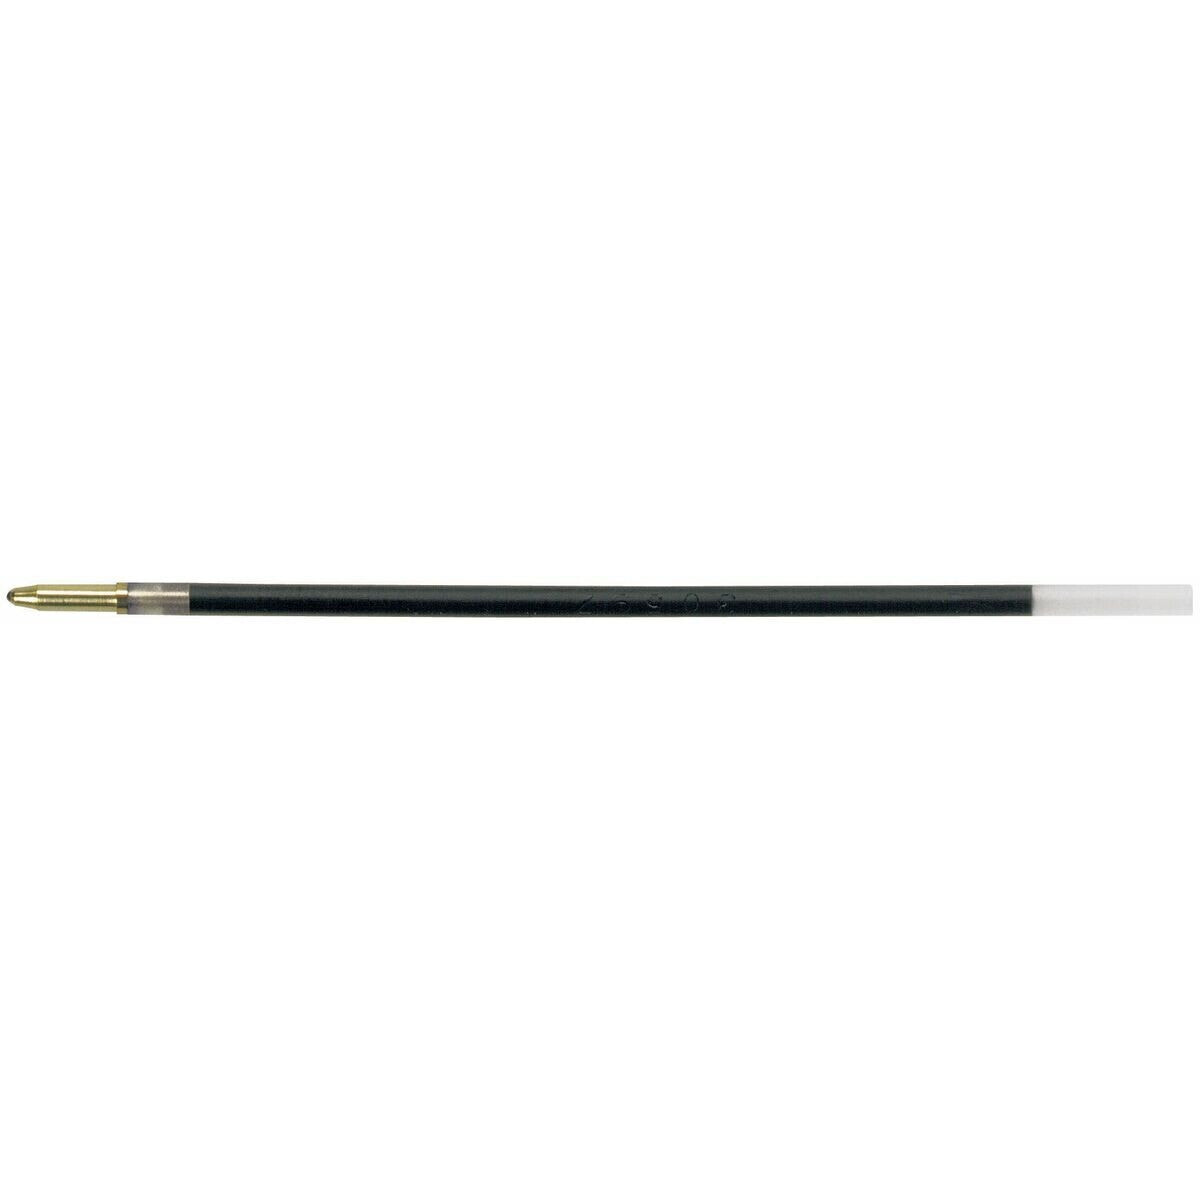 Запасные части Bic 4814409 Ручка 0,32 mm Синий 50 Предметы средний